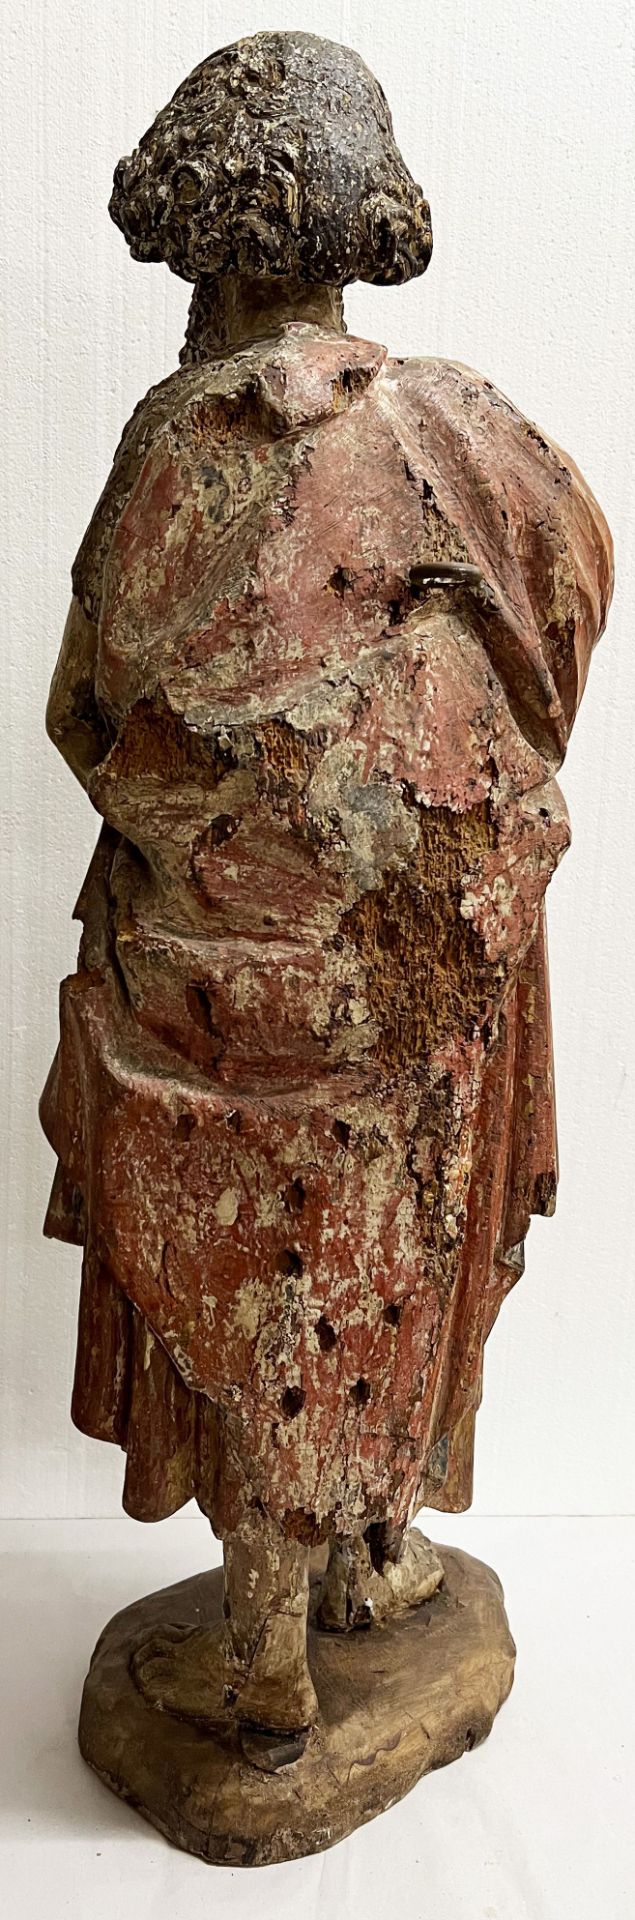 Johannes der Täufer/ St. John the Baptist. Süddeutsch, um 1470, Holz, farbig gefasst, - Bild 3 aus 4